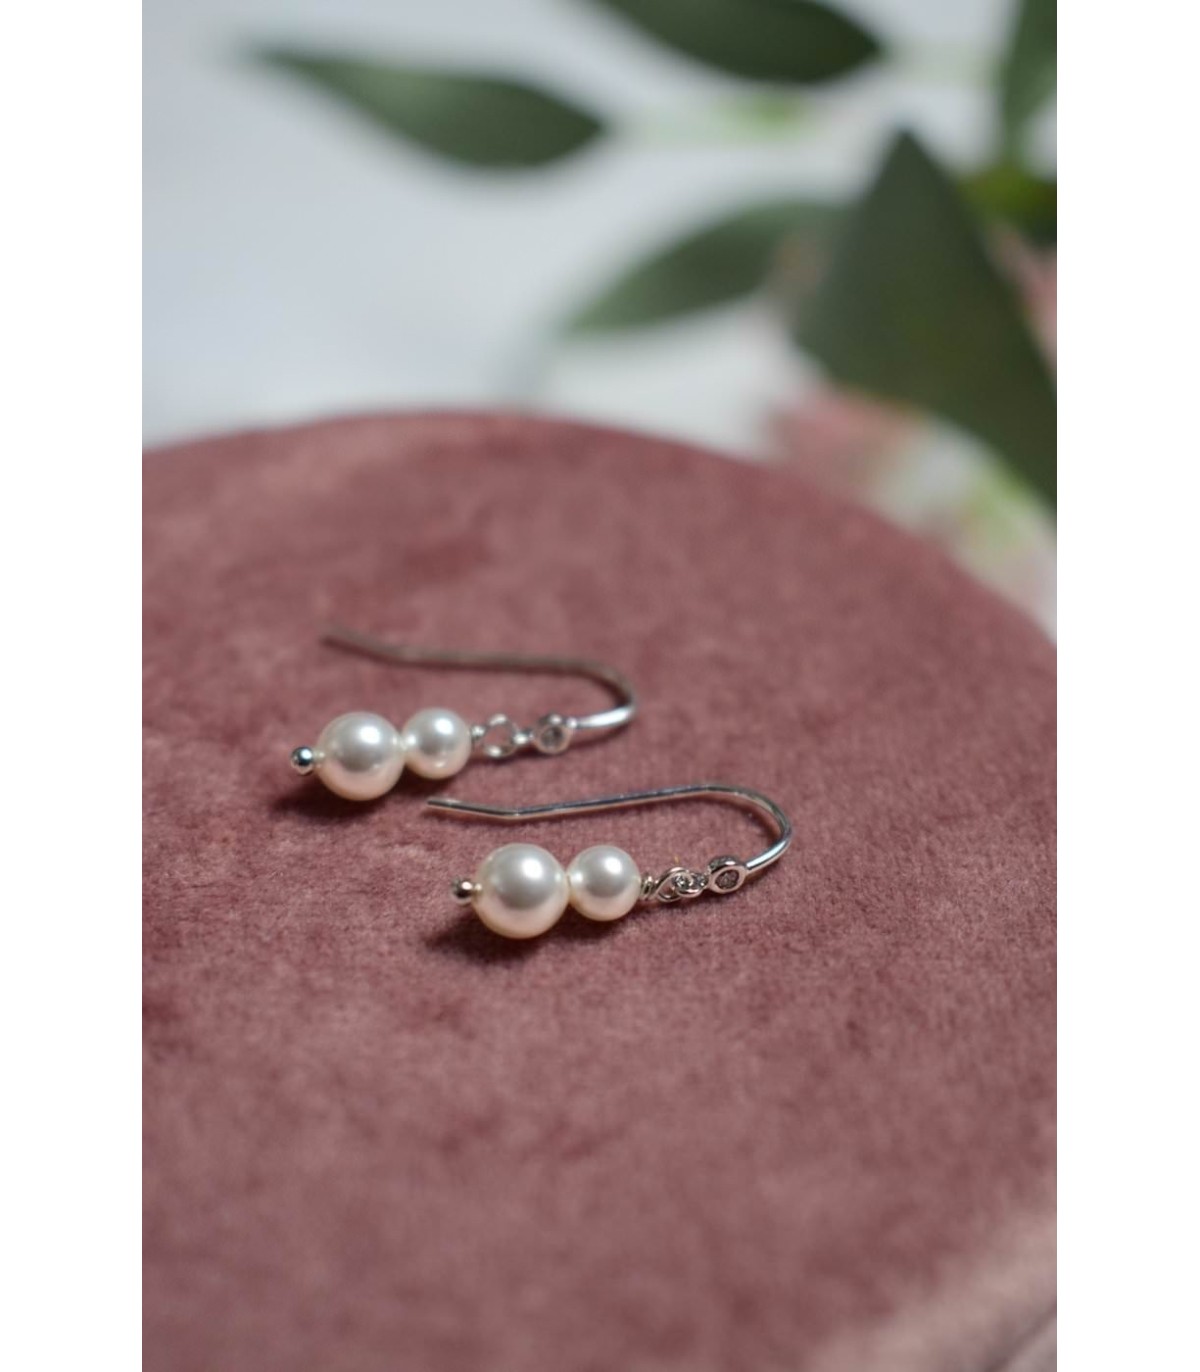 Boucles d'oreilles pour la mariée modèle Agathe, en perles et strass Swarovski.